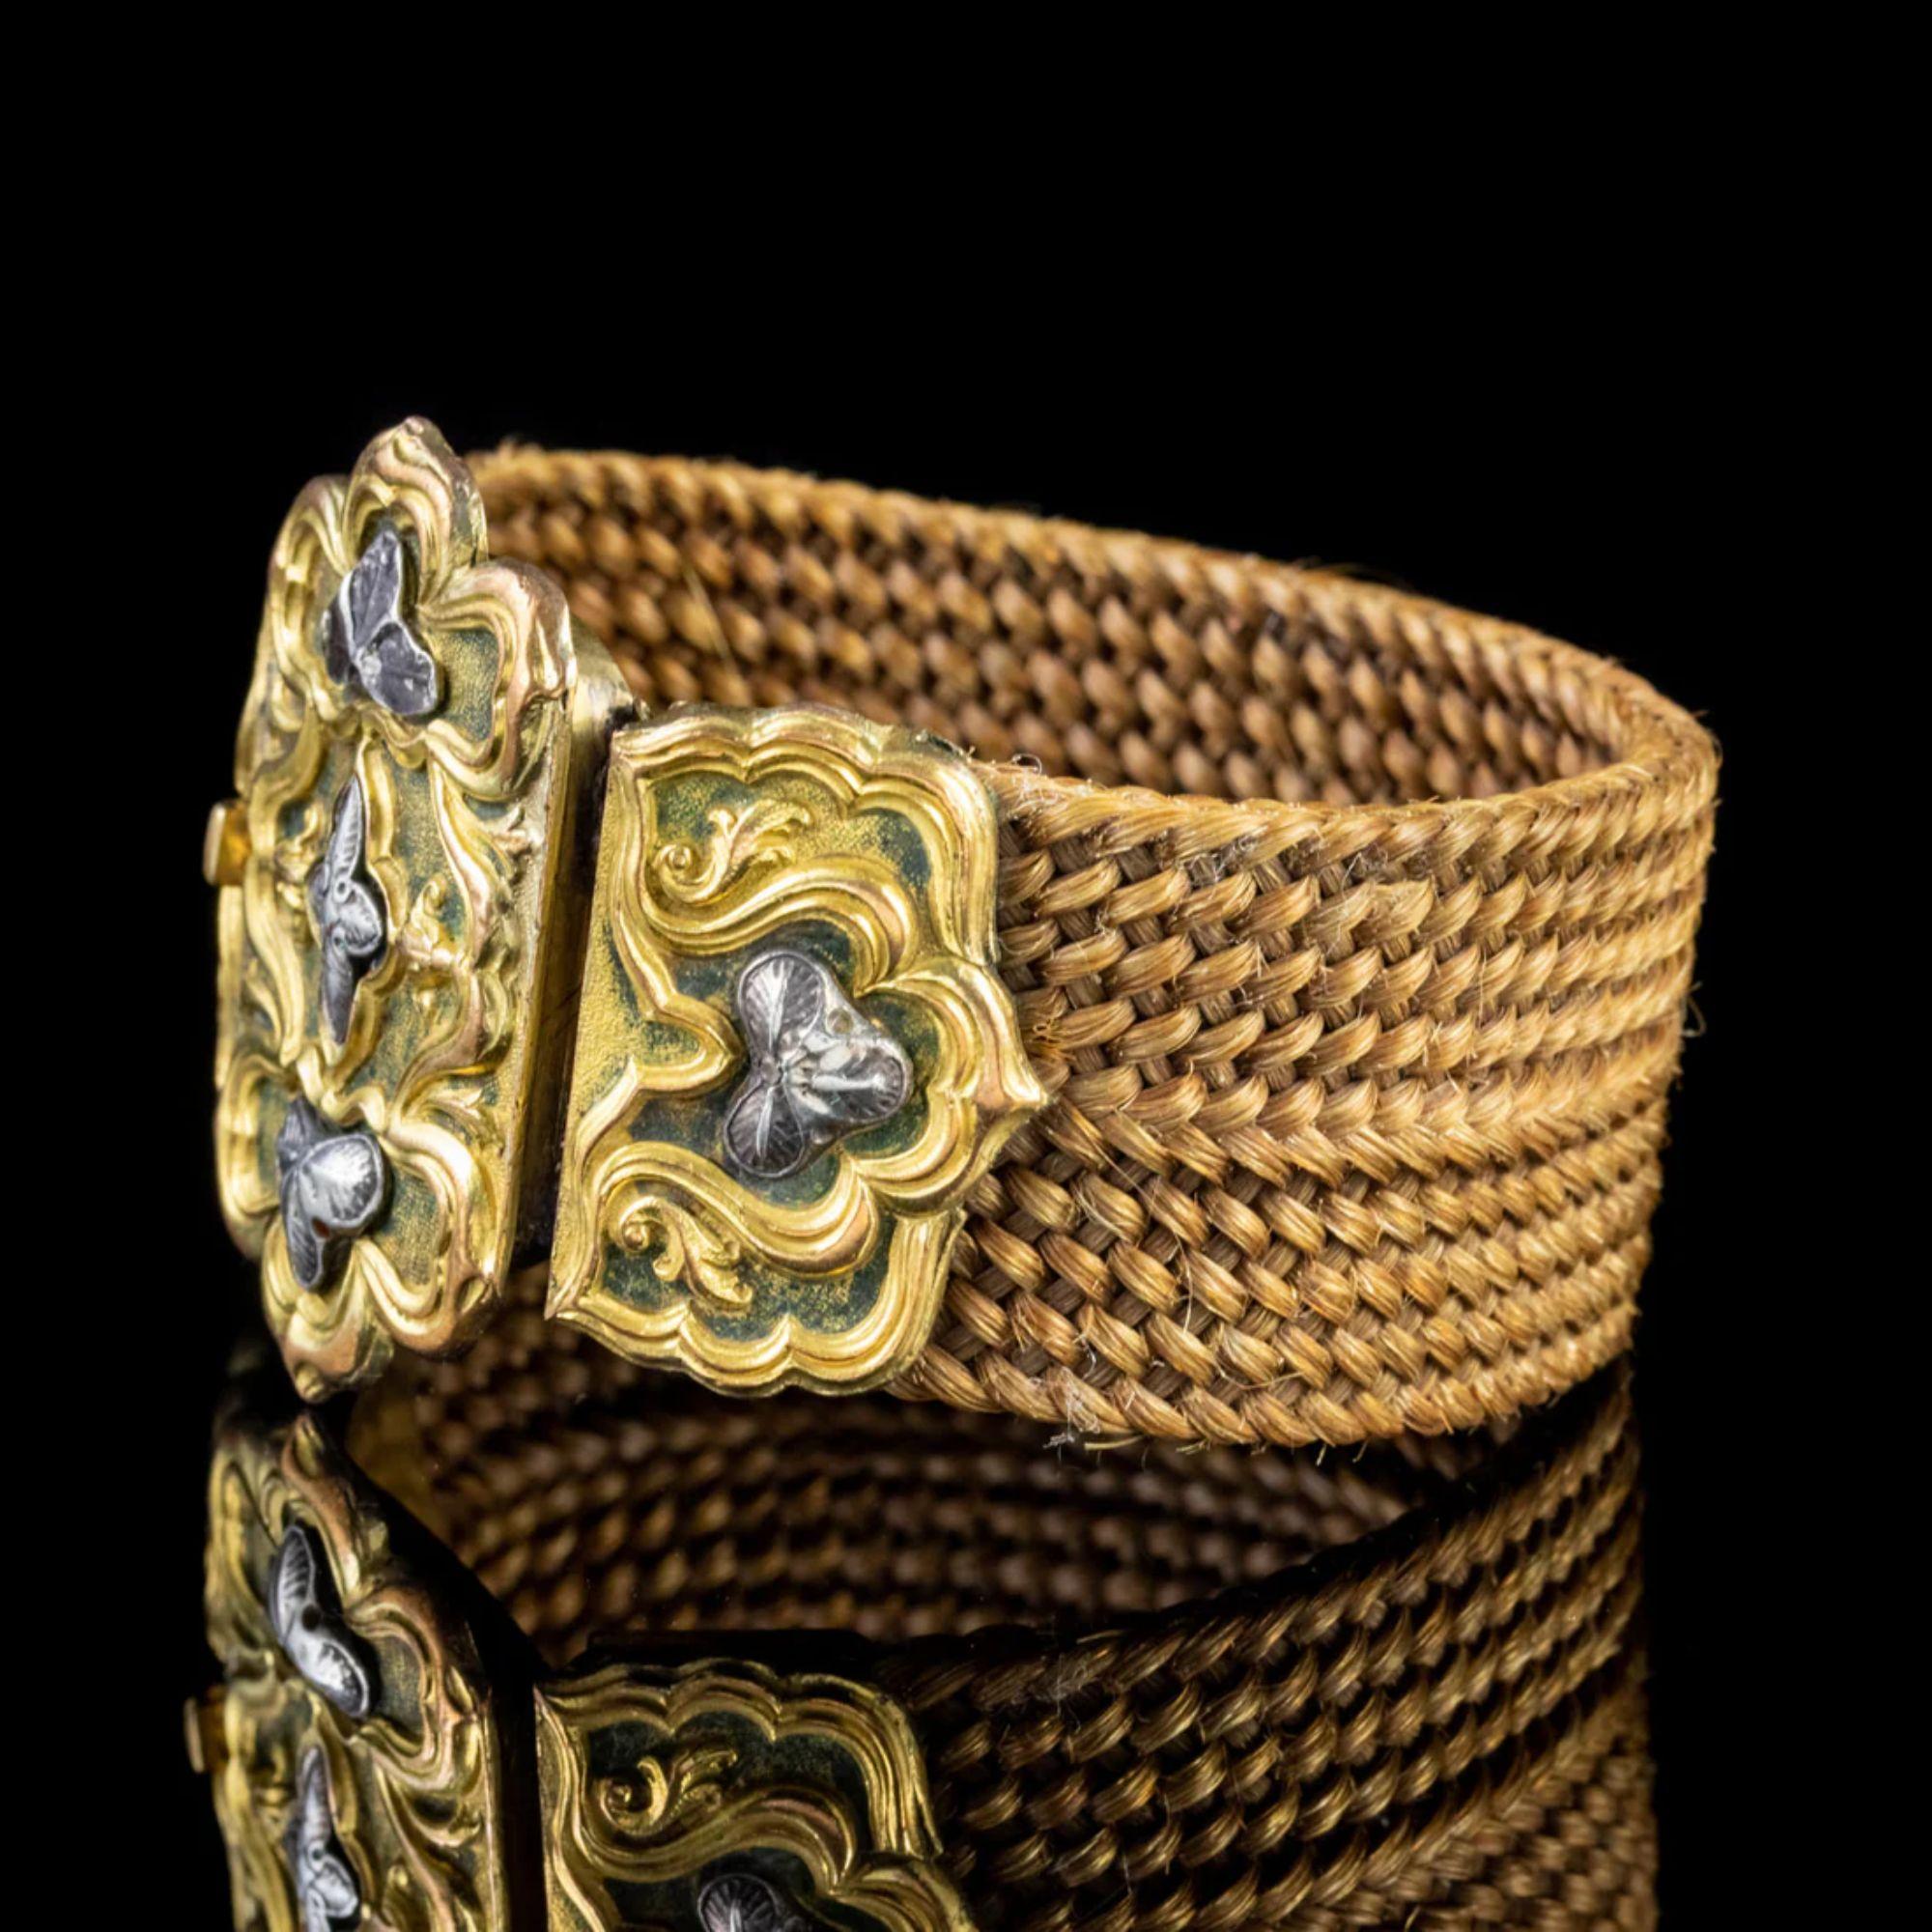 Un grand bracelet antique géorgien du début du 19e siècle composé d'une épaisse bande de cheveux tressés qui est étroitement tissée et d'une belle nuance de brun doré.

L'anneau est fixé à un grand fermoir en forme de boîte ornée d'un magnifique